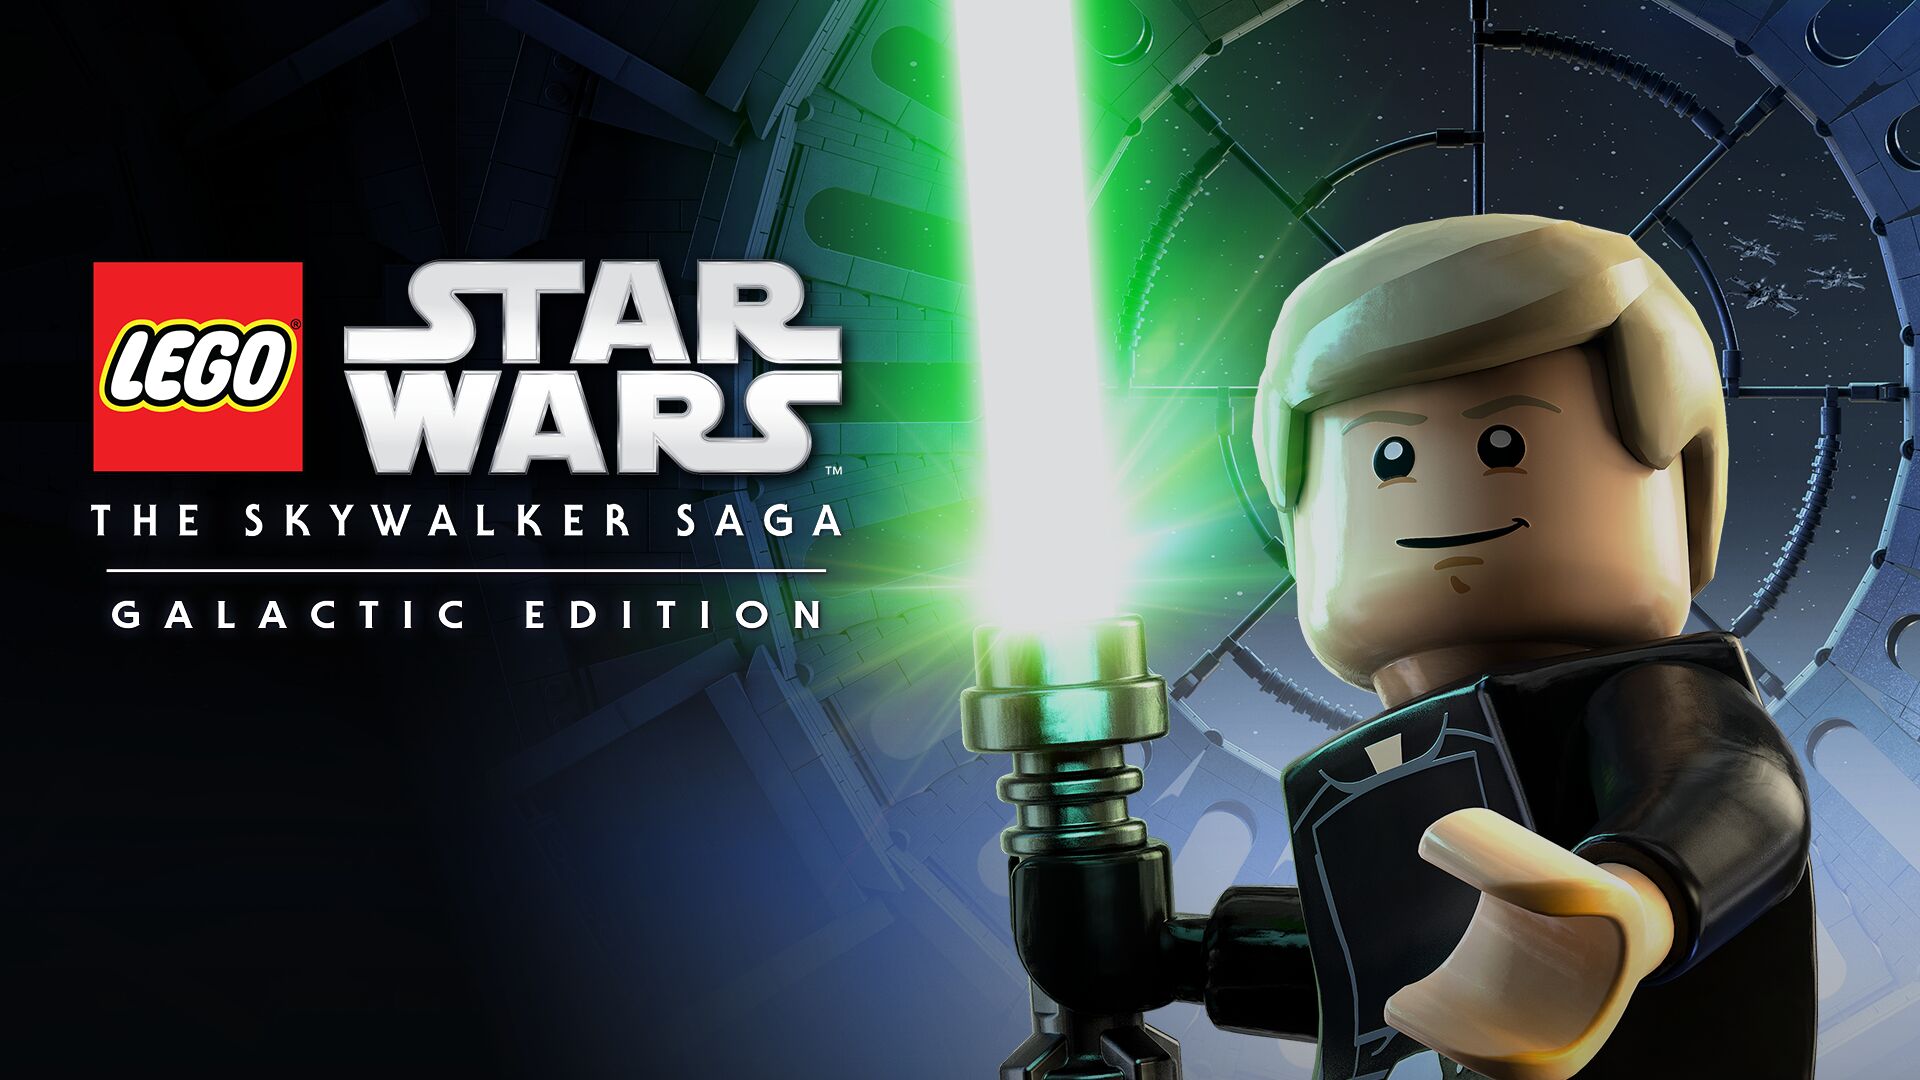 EGO Star Wars: The Skywalker Saga Galactic Edition Hero Image